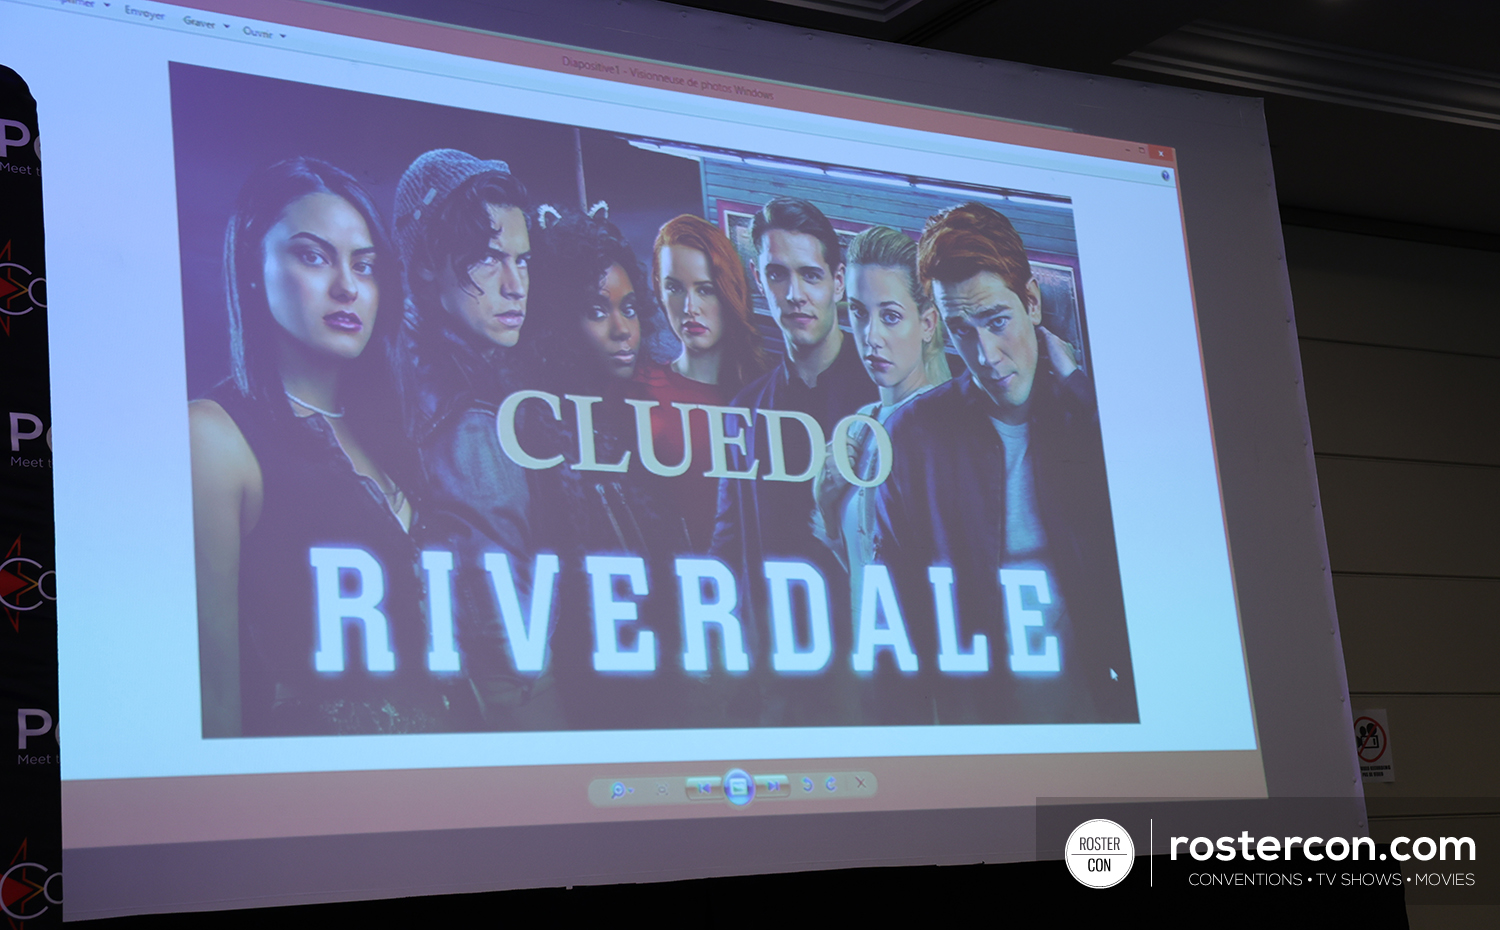 Riverdale - Rivercon 3